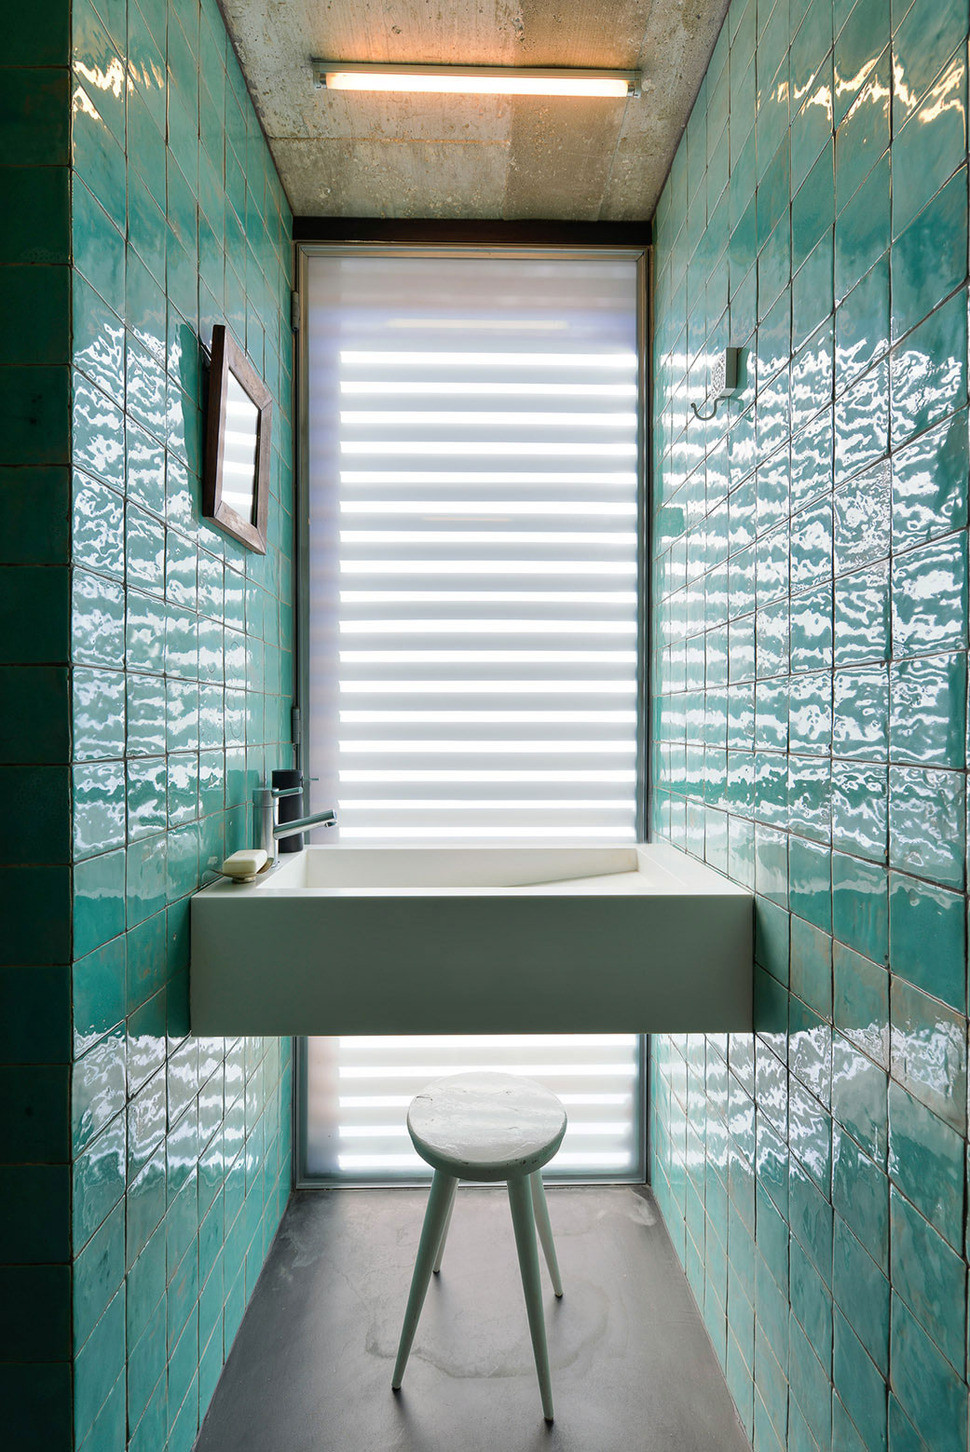 Bathroom Ideas With Tiles
 Top 10 Tile Design Ideas for a Modern Bathroom for 2015